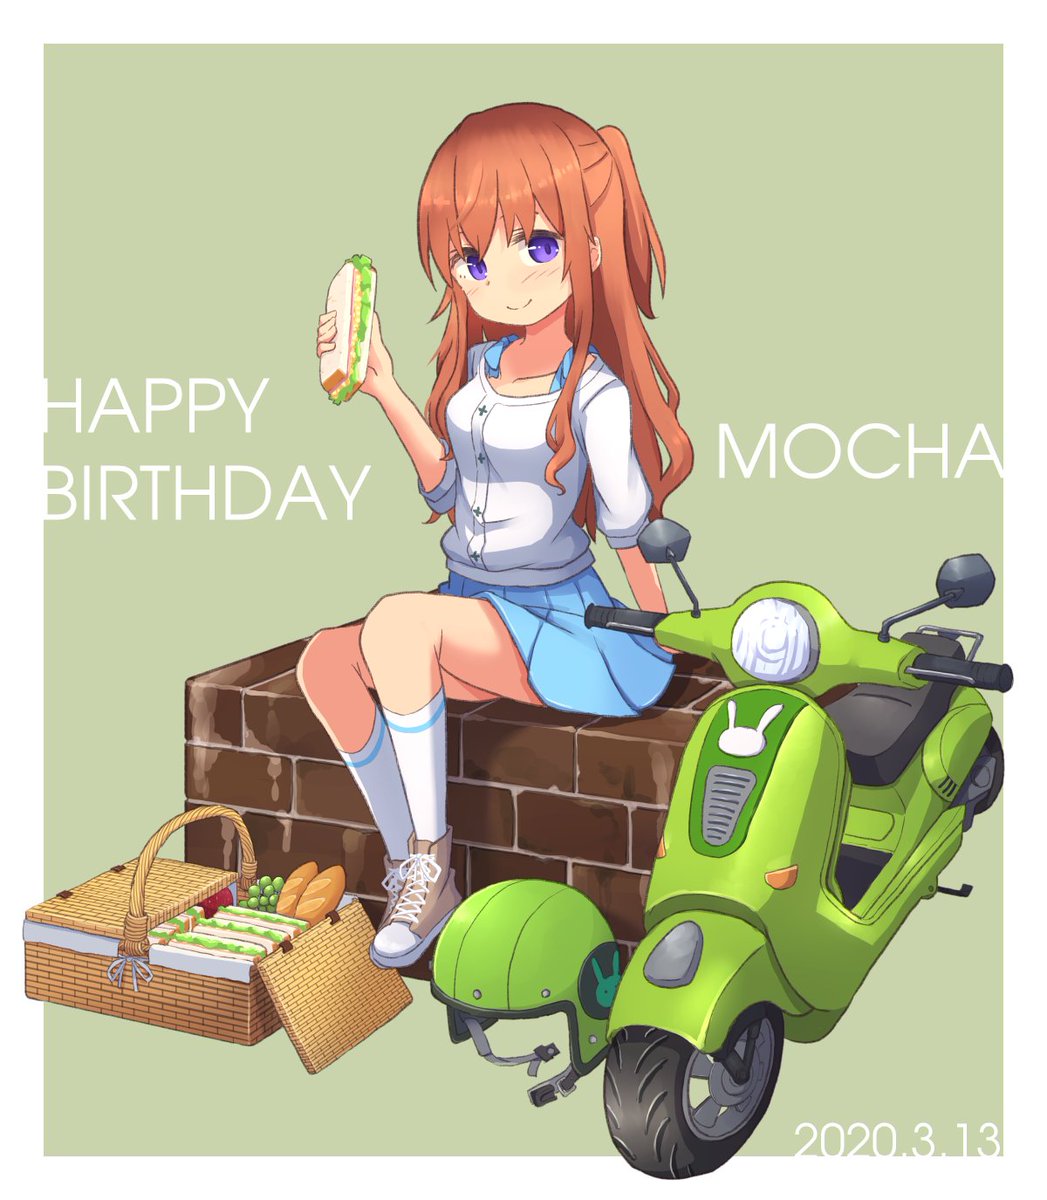 モカさん誕生日おめでとうございます 同日はサンドイッチの日でもあるらしいです Mohei のイラスト